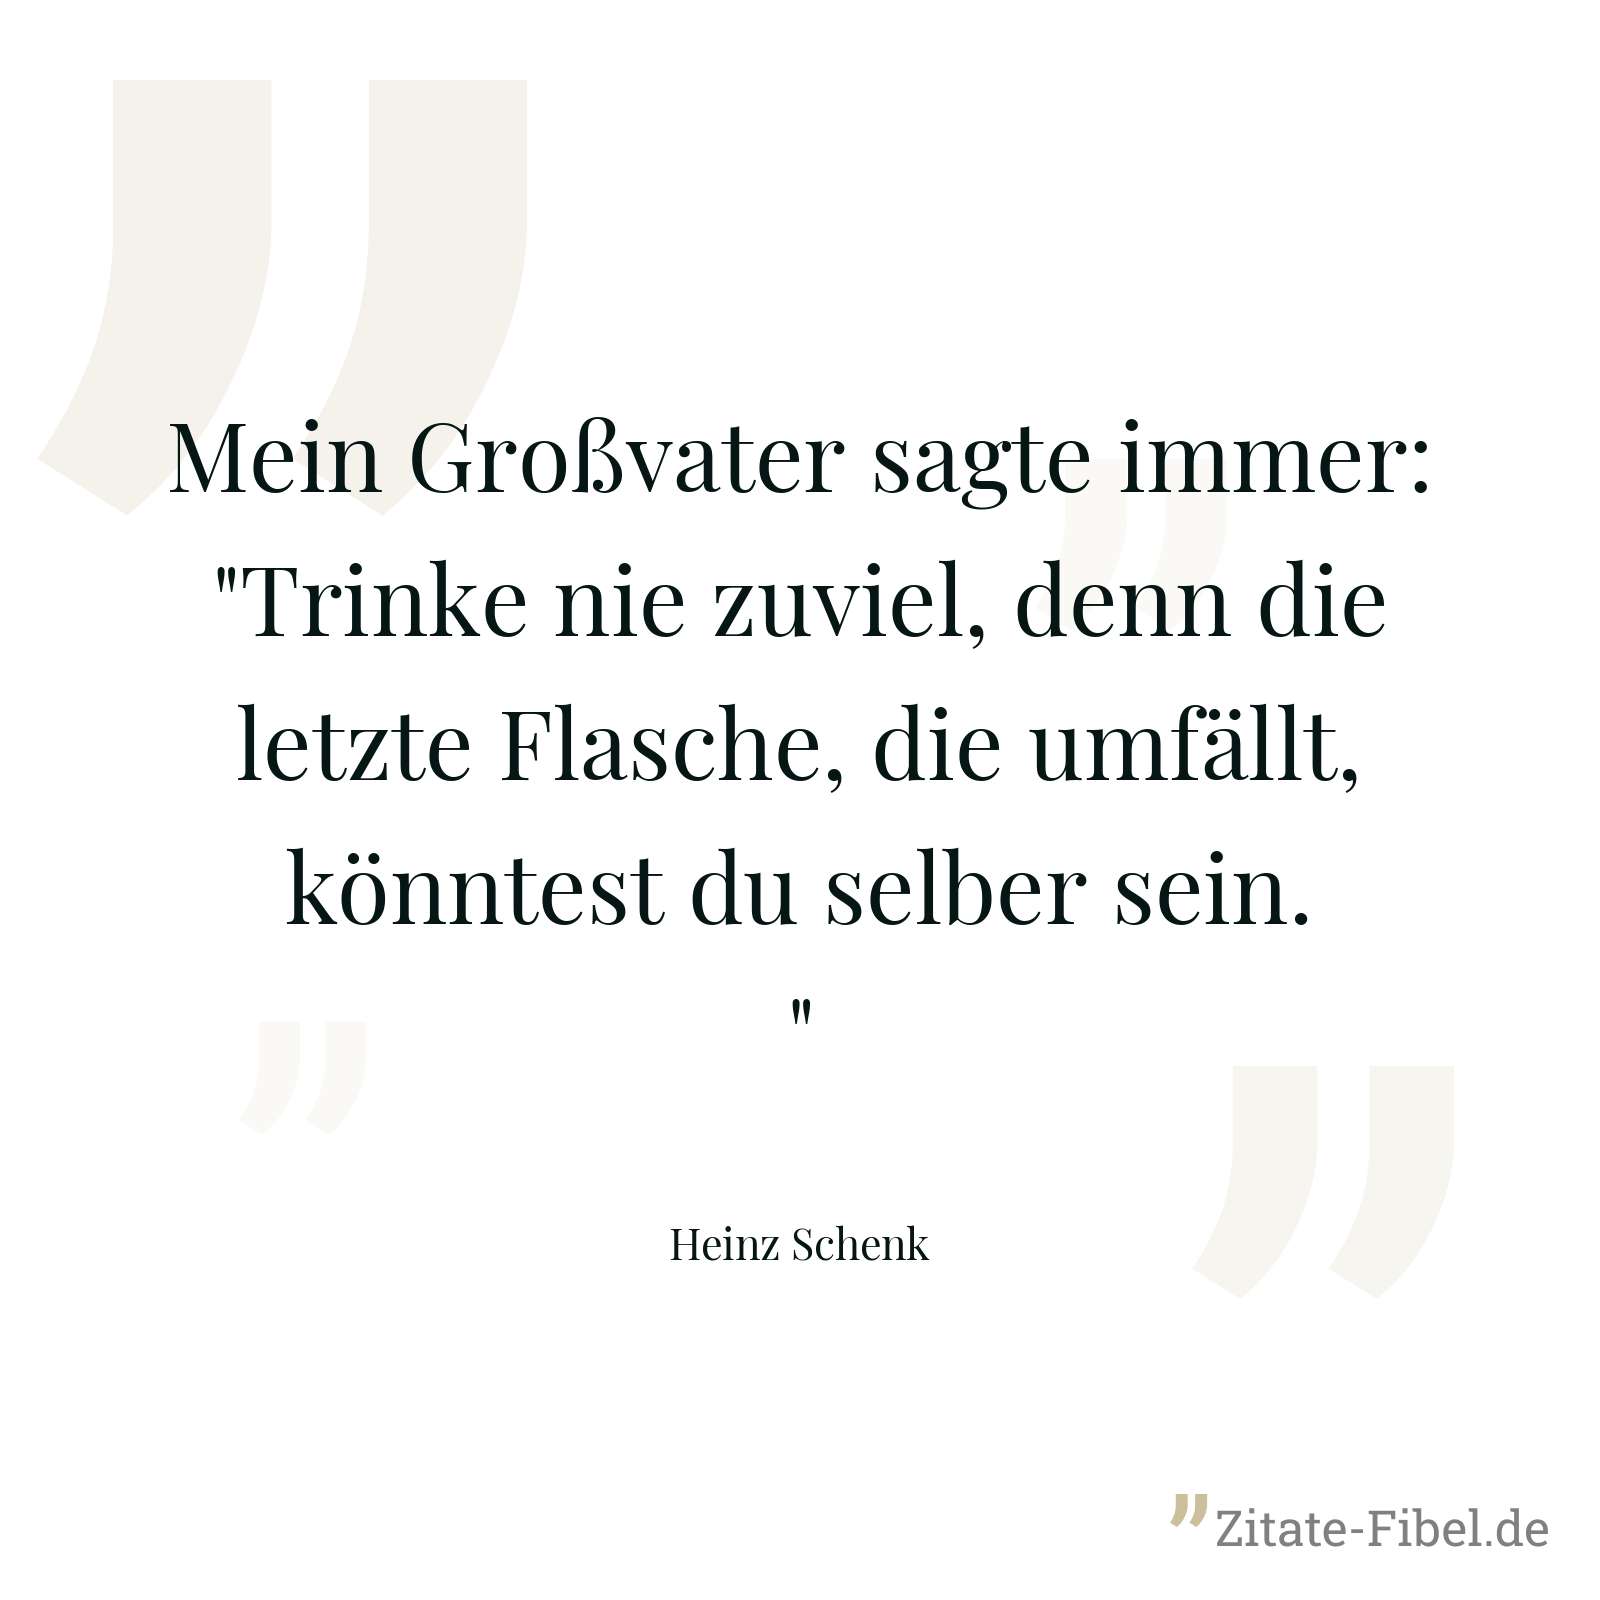 Mein Großvater sagte immer: "Trinke nie zuviel, denn die letzte Flasche, die umfällt, könntest du selber sein." - Heinz Schenk